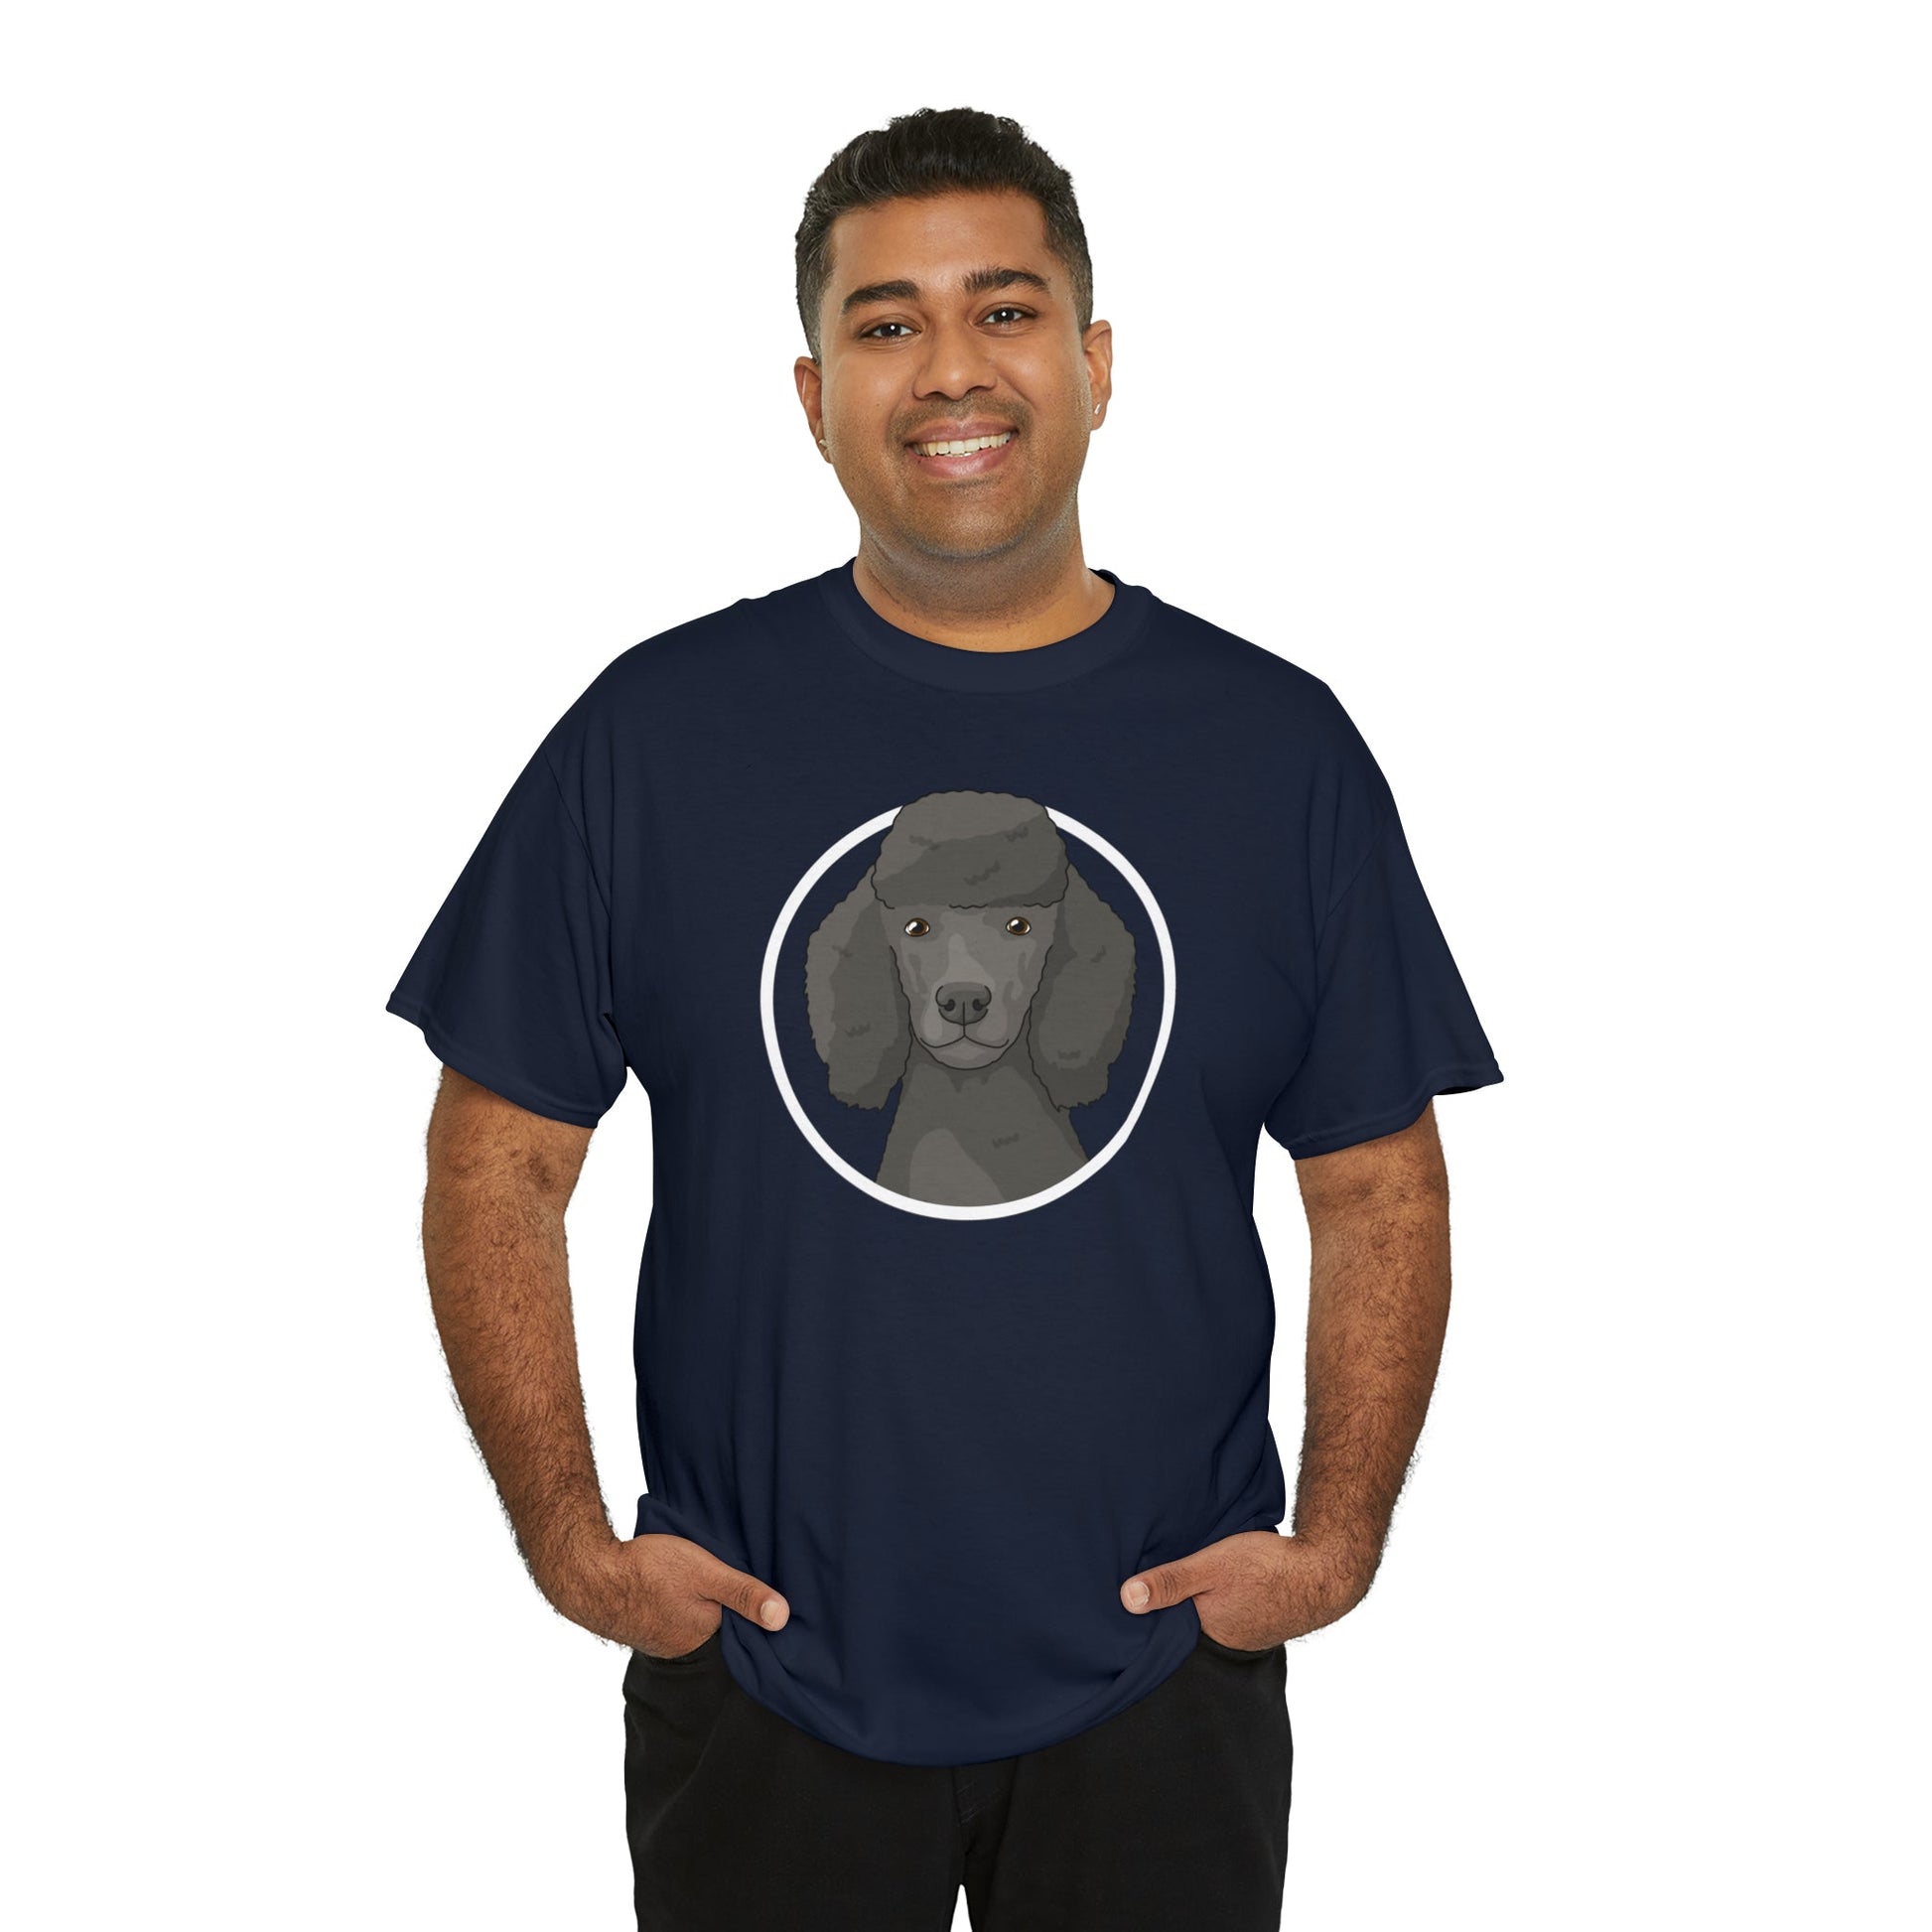 Poodle Circle | T-shirt - Detezi Designs-15810841610035219293